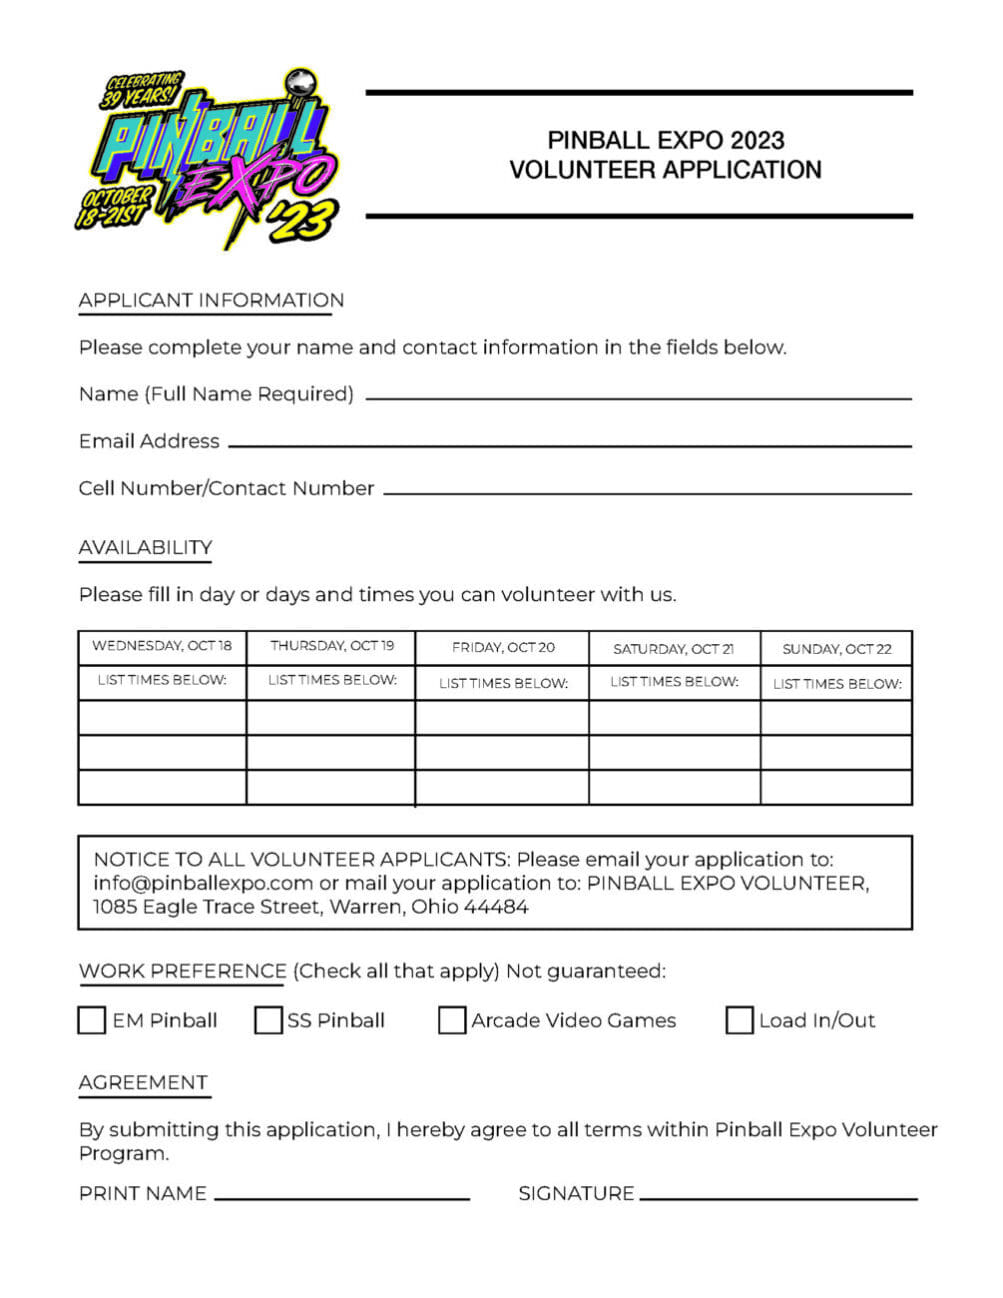 PinballExpo-2023-Volunteer-Form